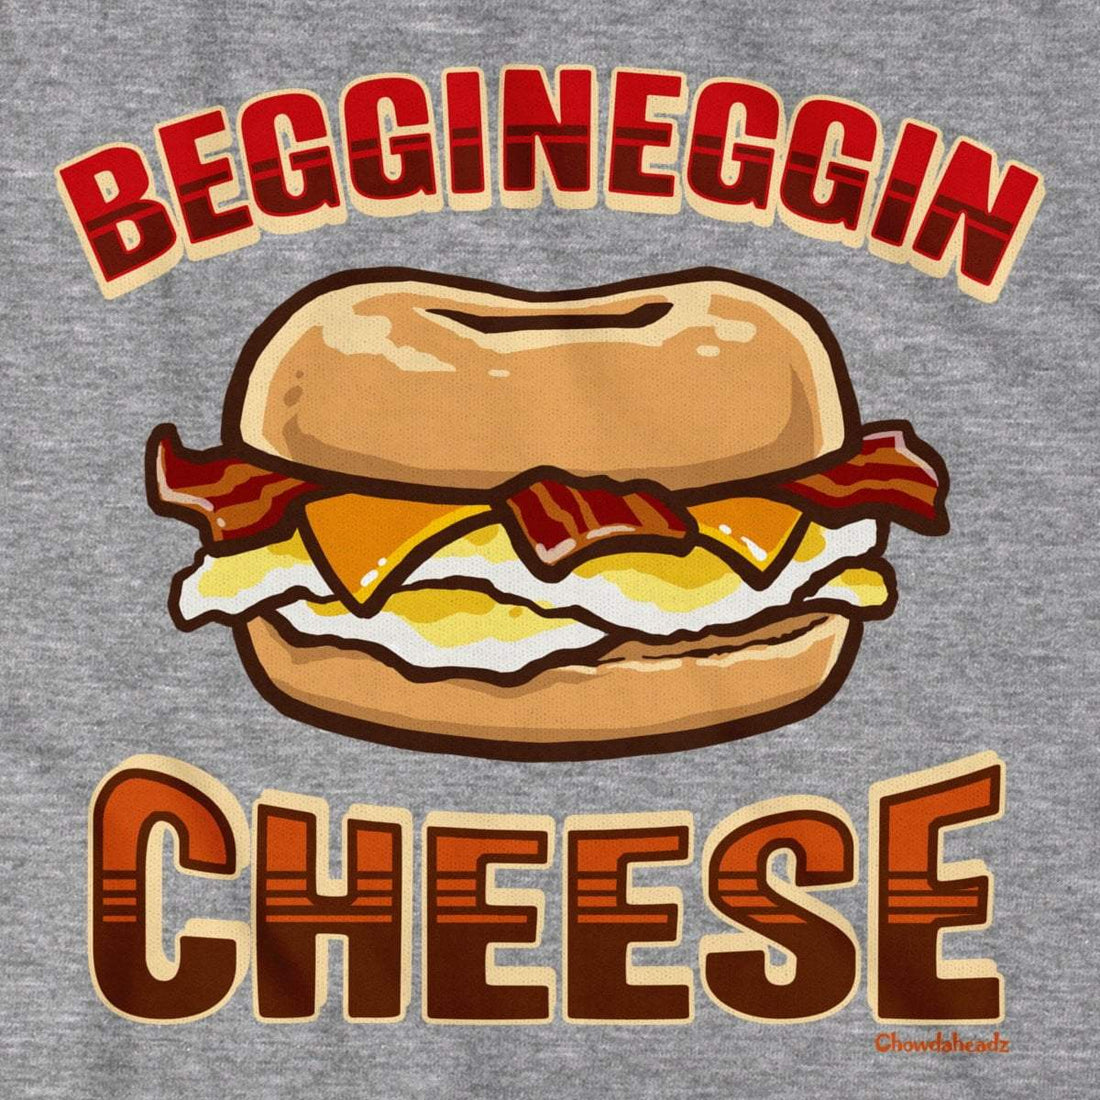 Beggineggin Cheese T-Shirt - Chowdaheadz